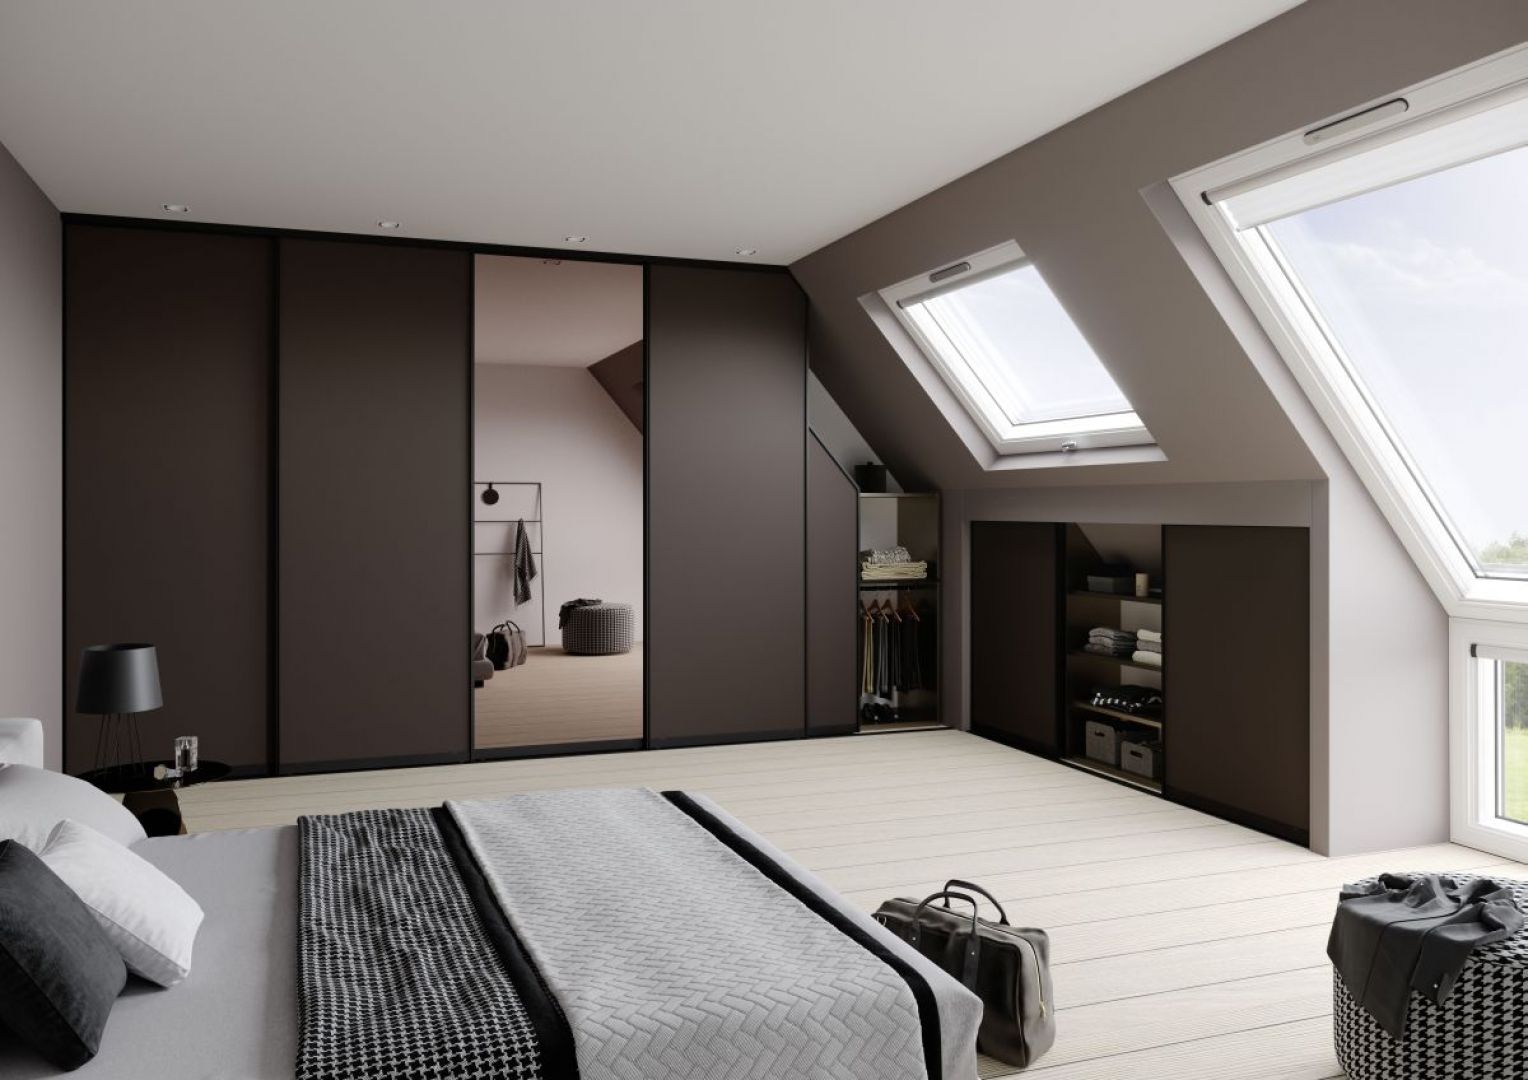 Sypialnia na poddaszu może być atrakcyjnym wizualnie i funkcjonalnym pomieszczeniem. Fot. Raumplus